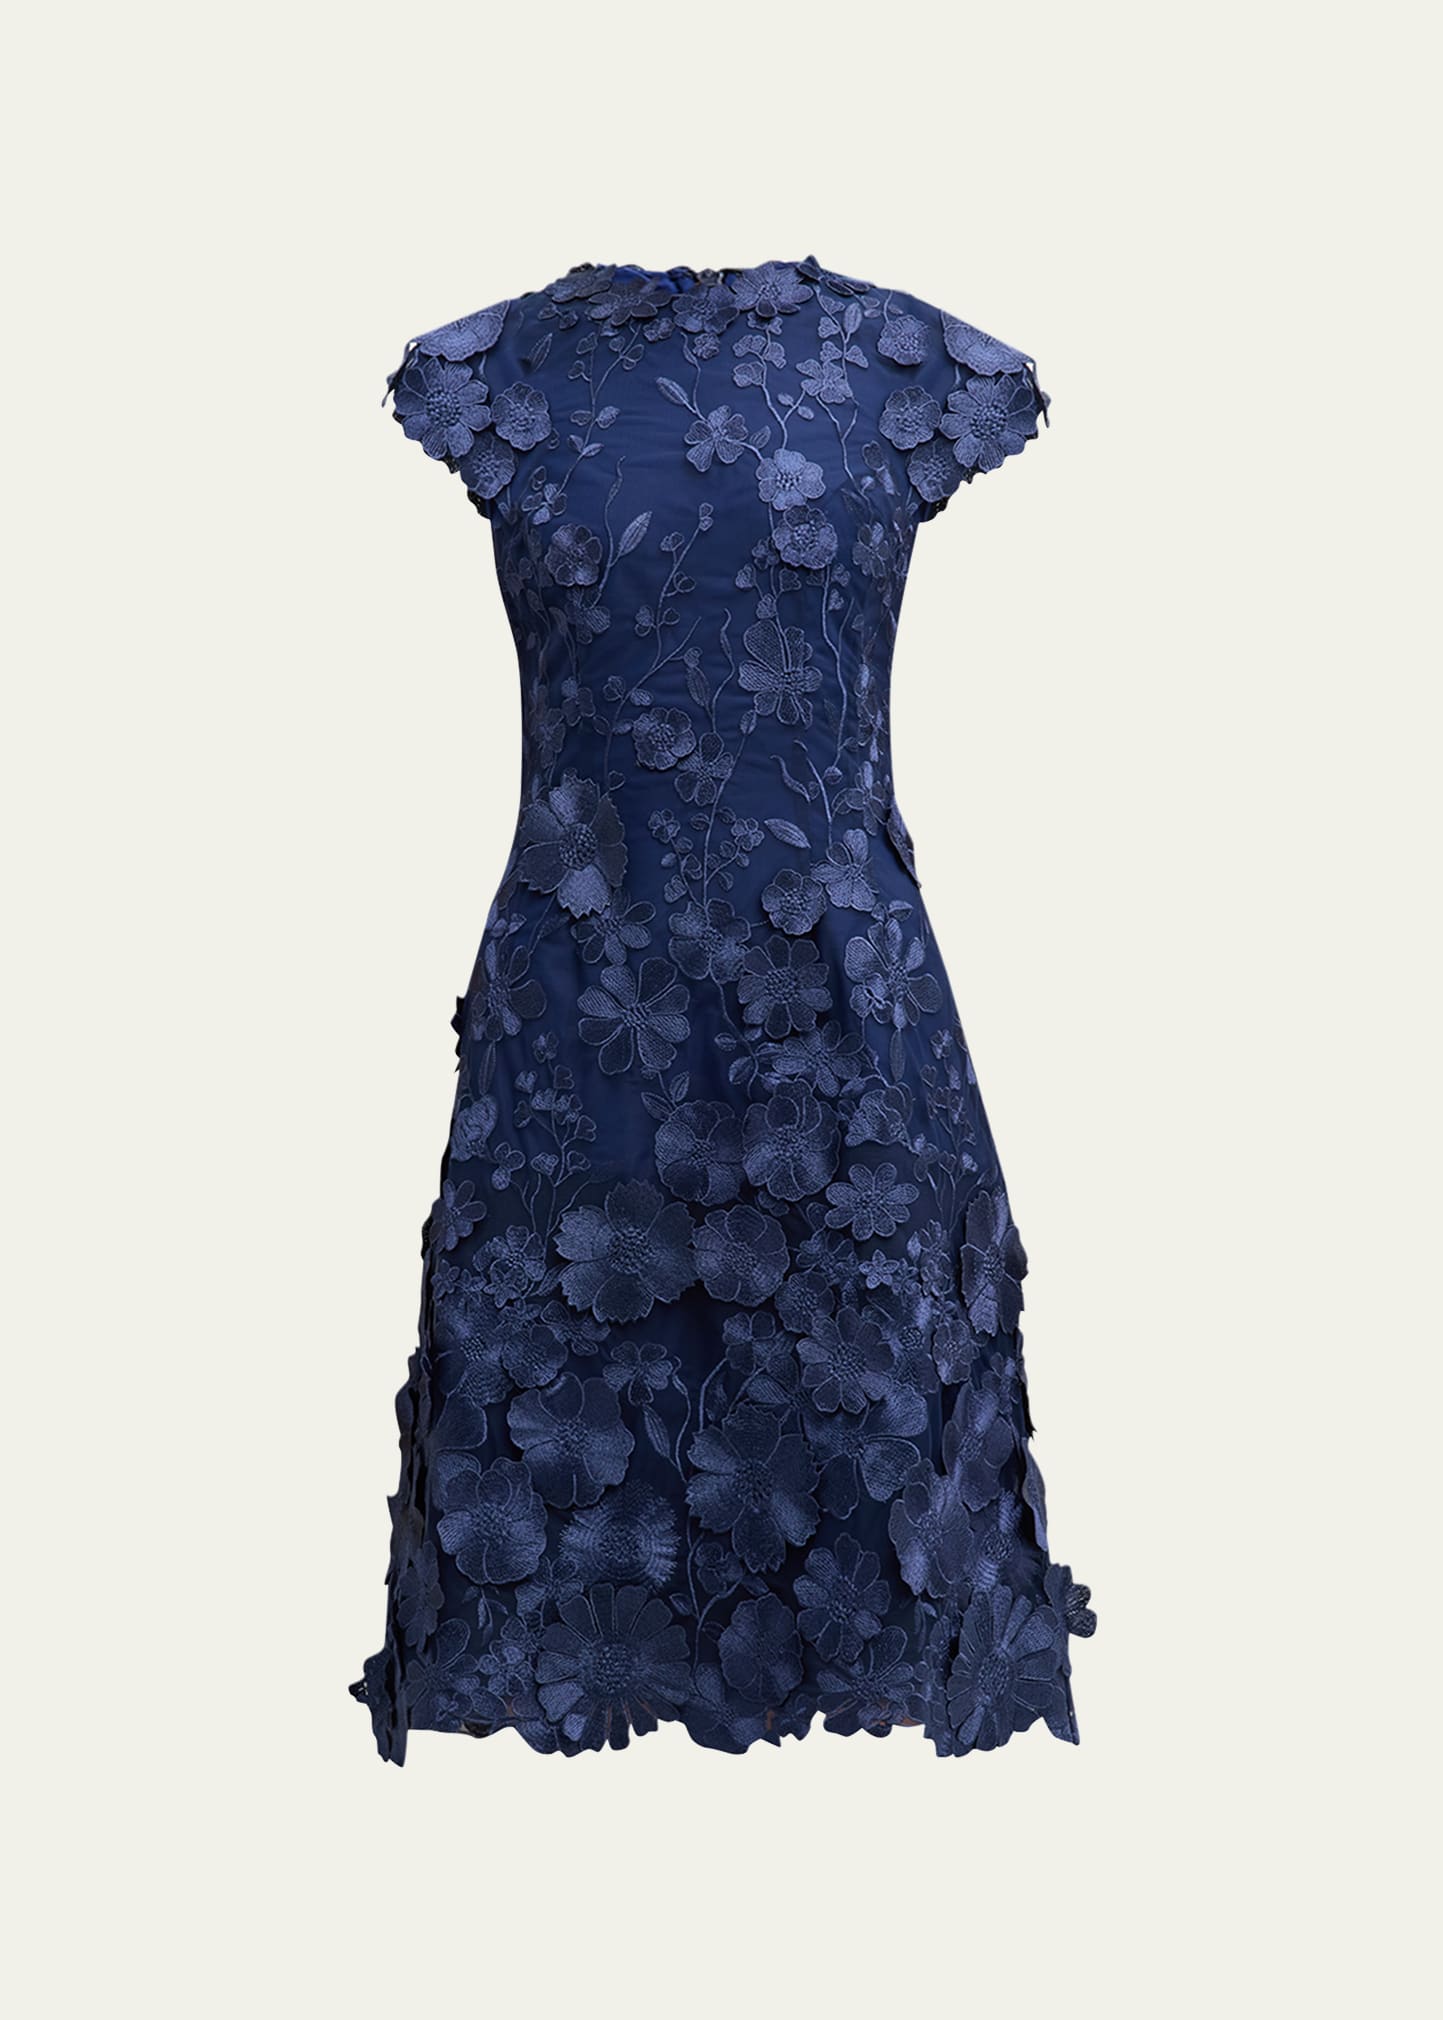 3D Floral Applique Lace Knee-Length Dress